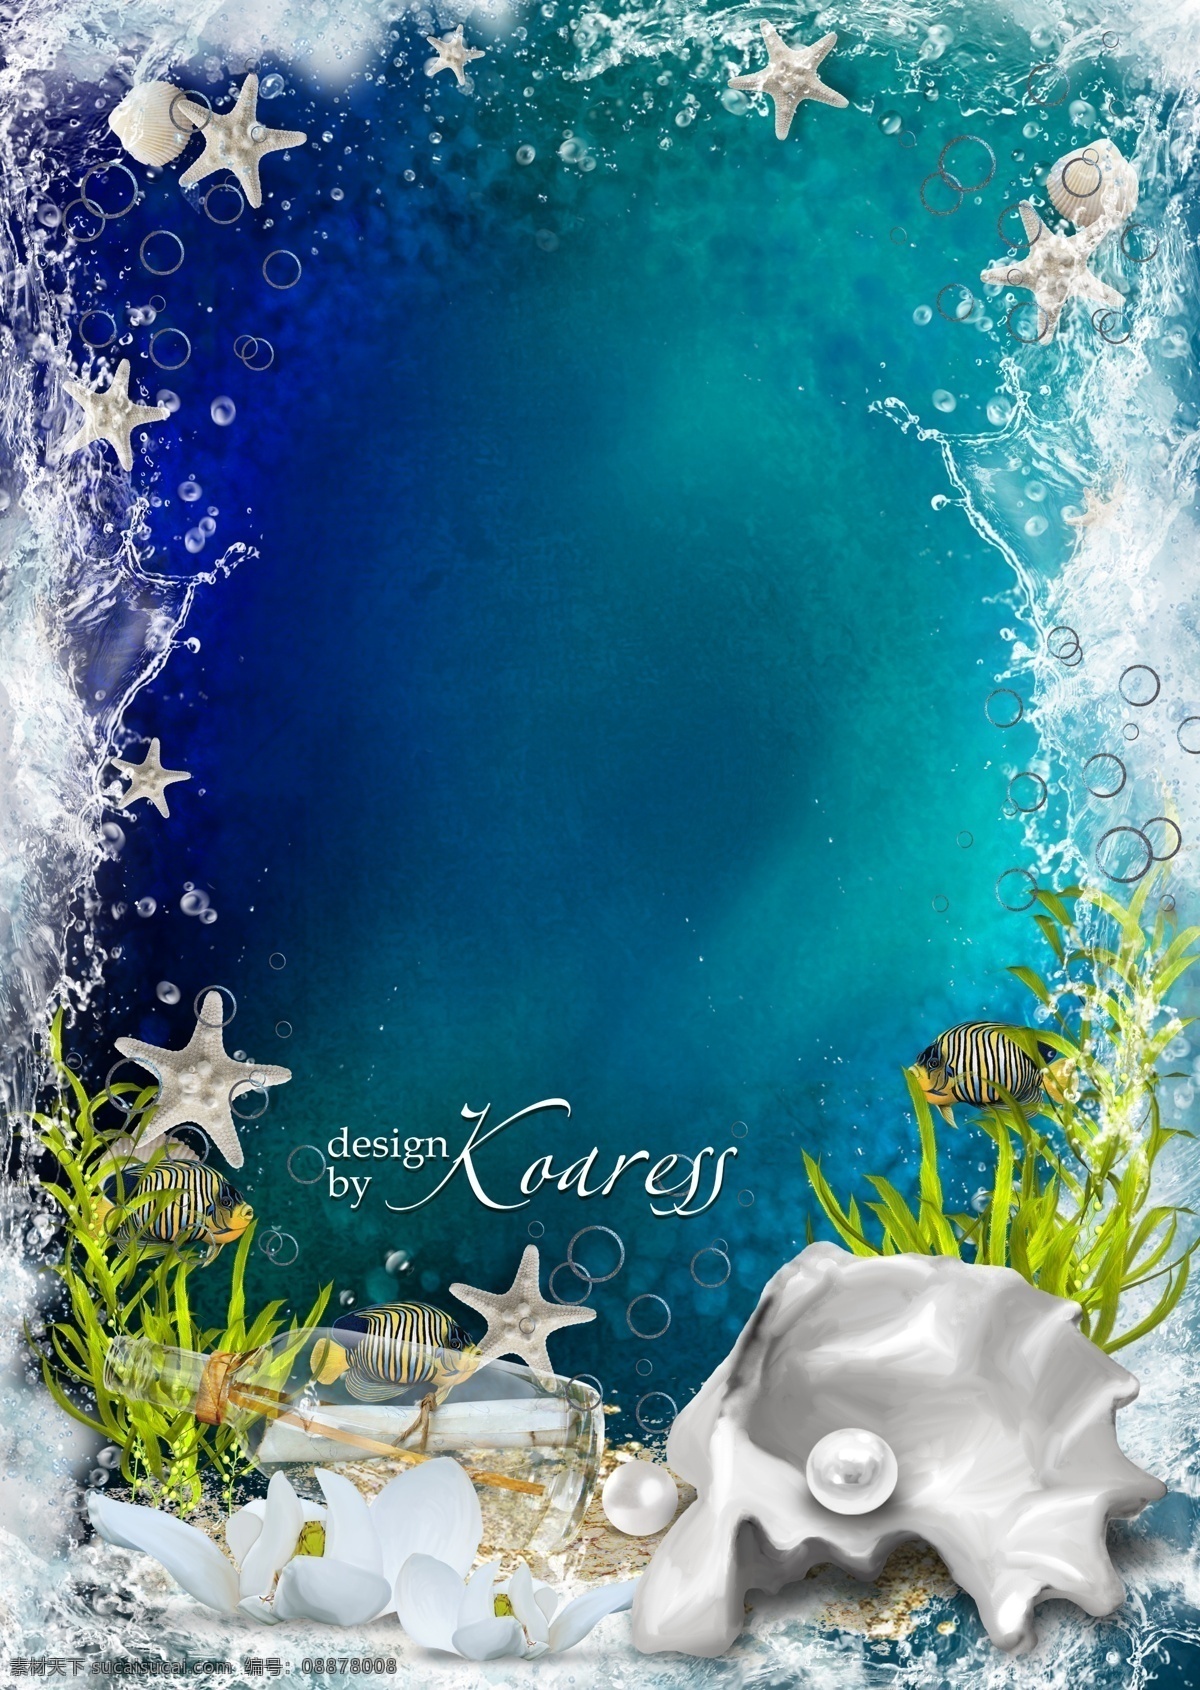 海底世界相框 幽梦轩 海底 世界 淘宝素材 淘宝设计 淘宝模板下载 青色 天蓝色